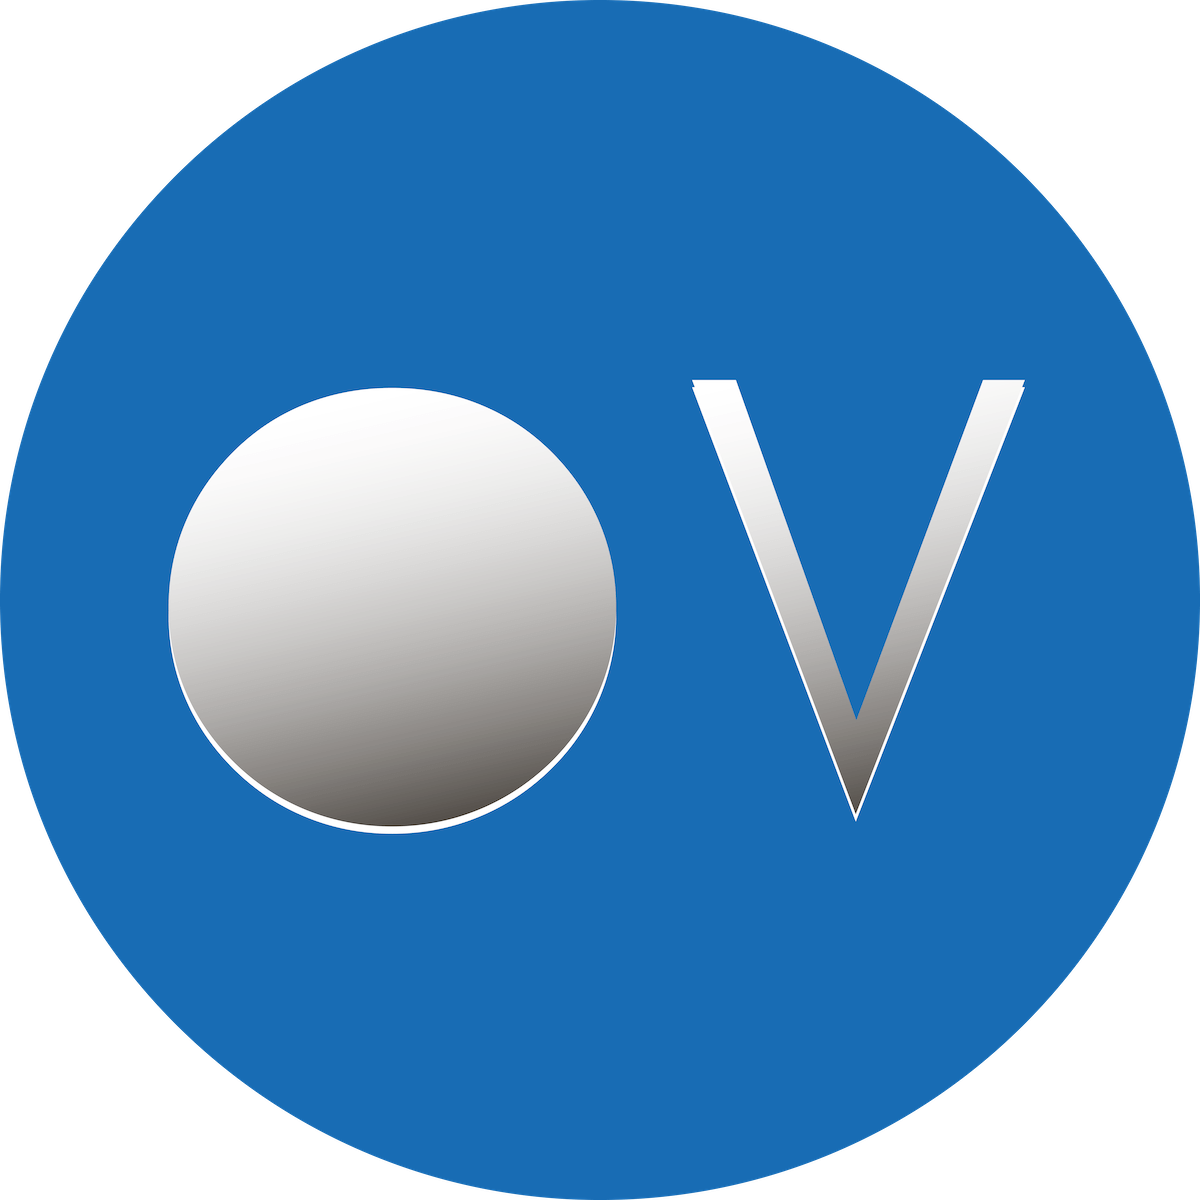 Orionvega logo